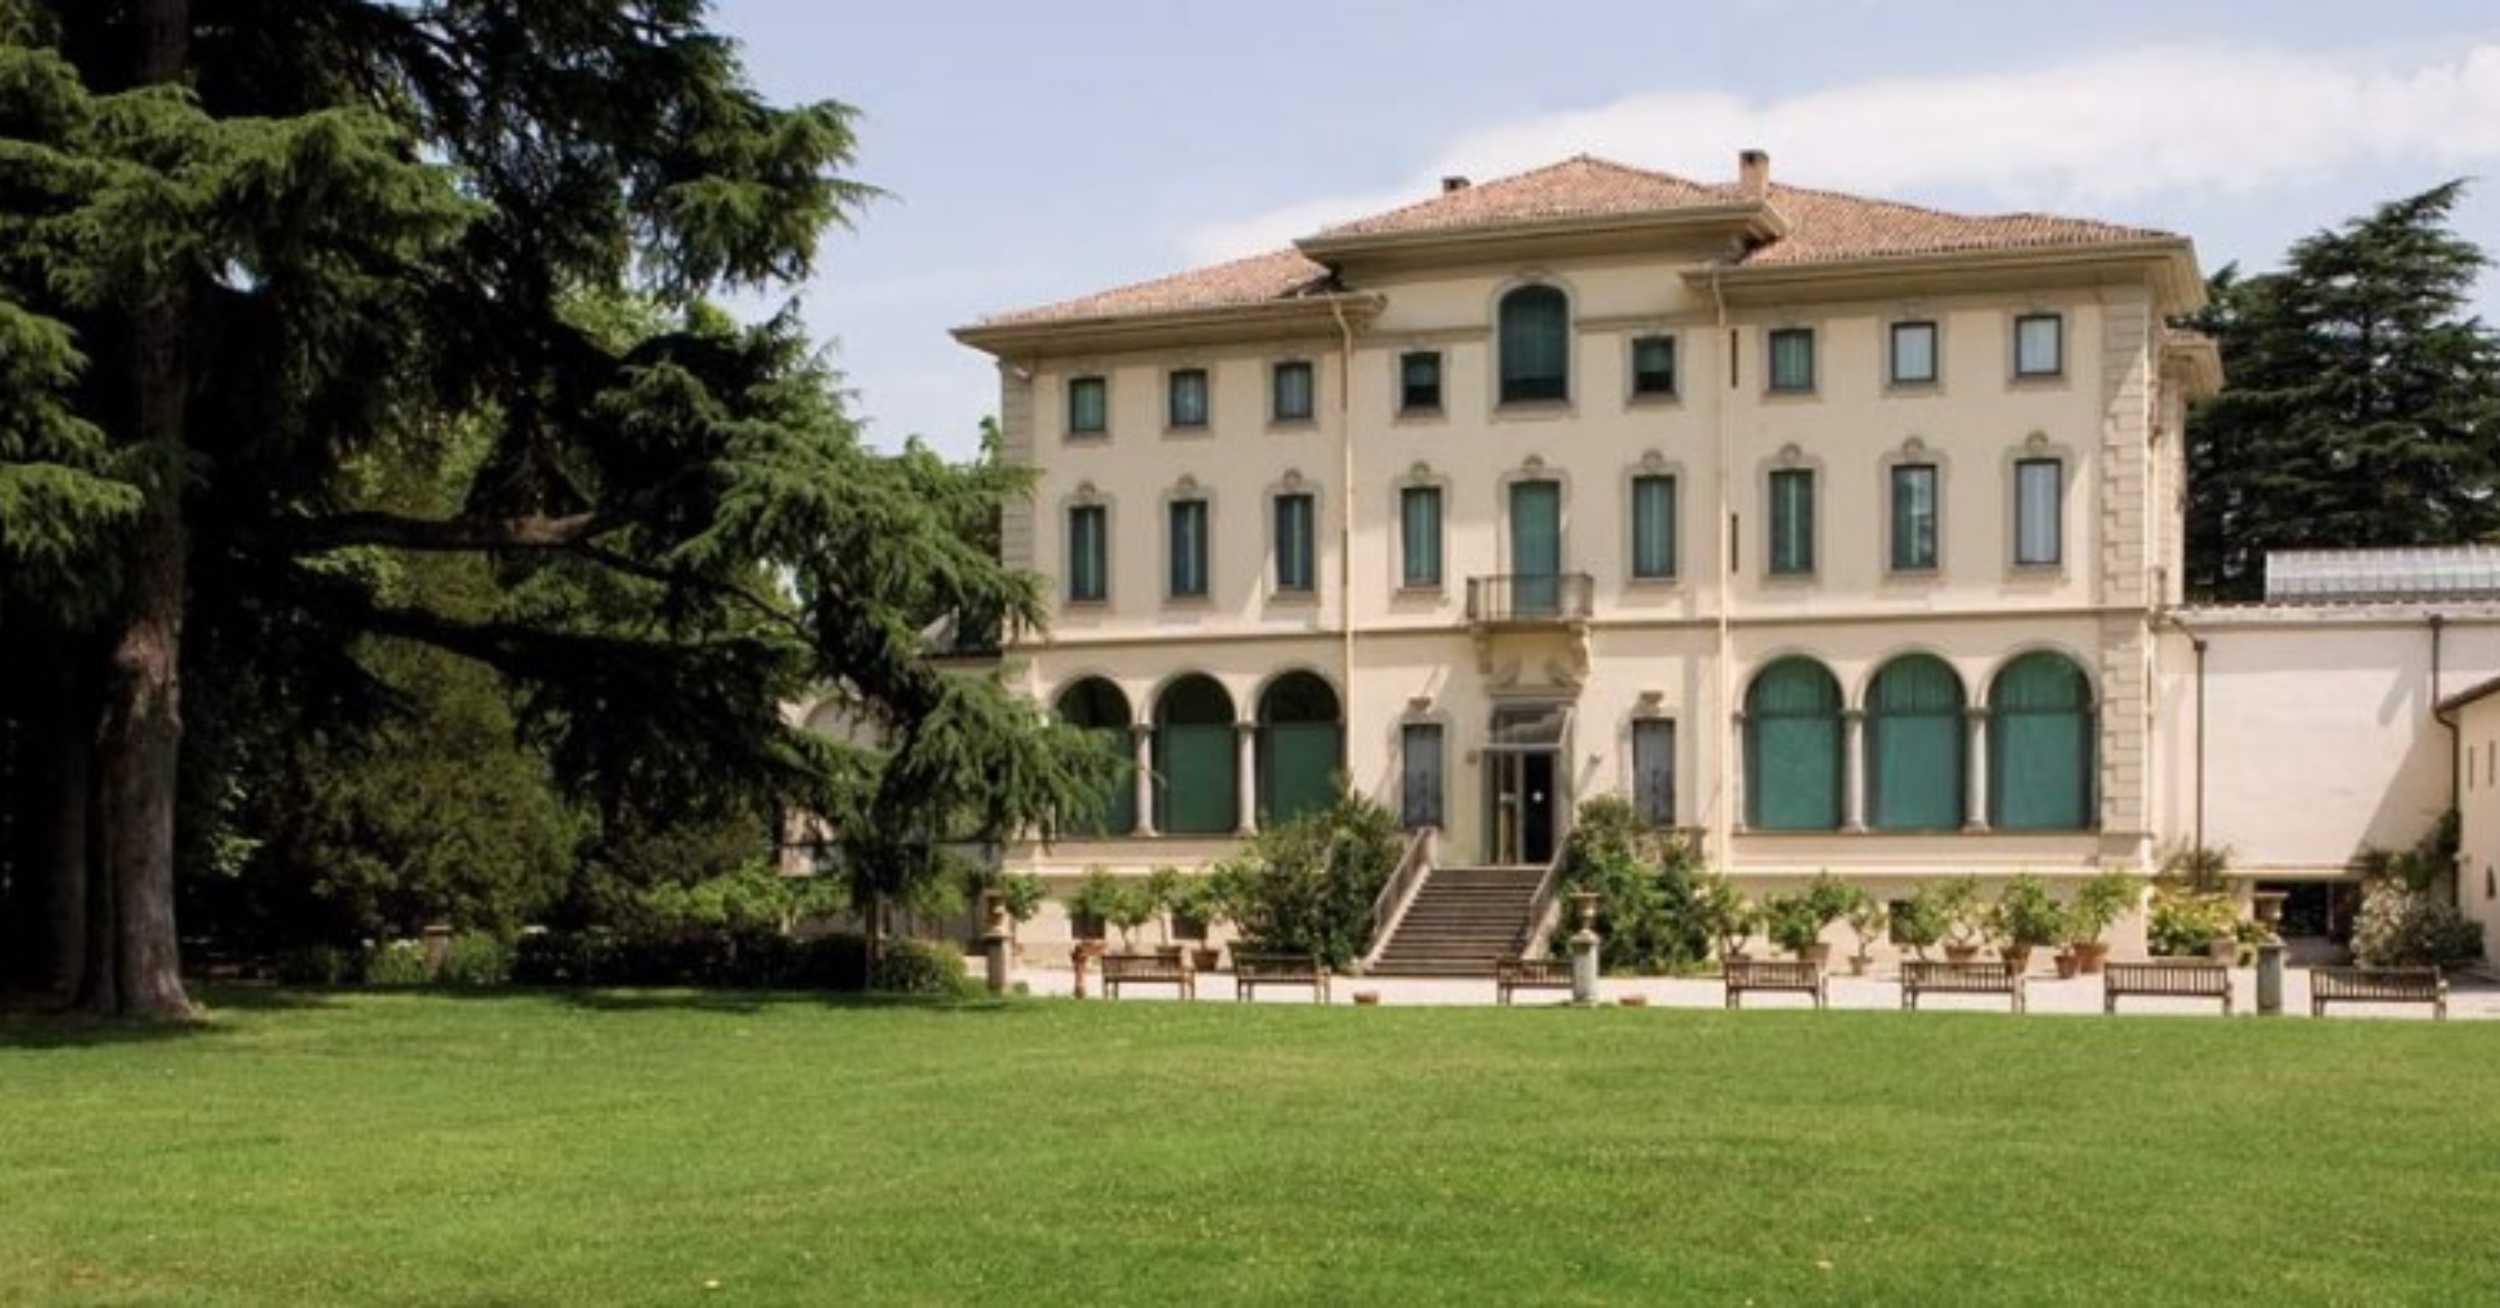 Fondazione Magnani-Rocca